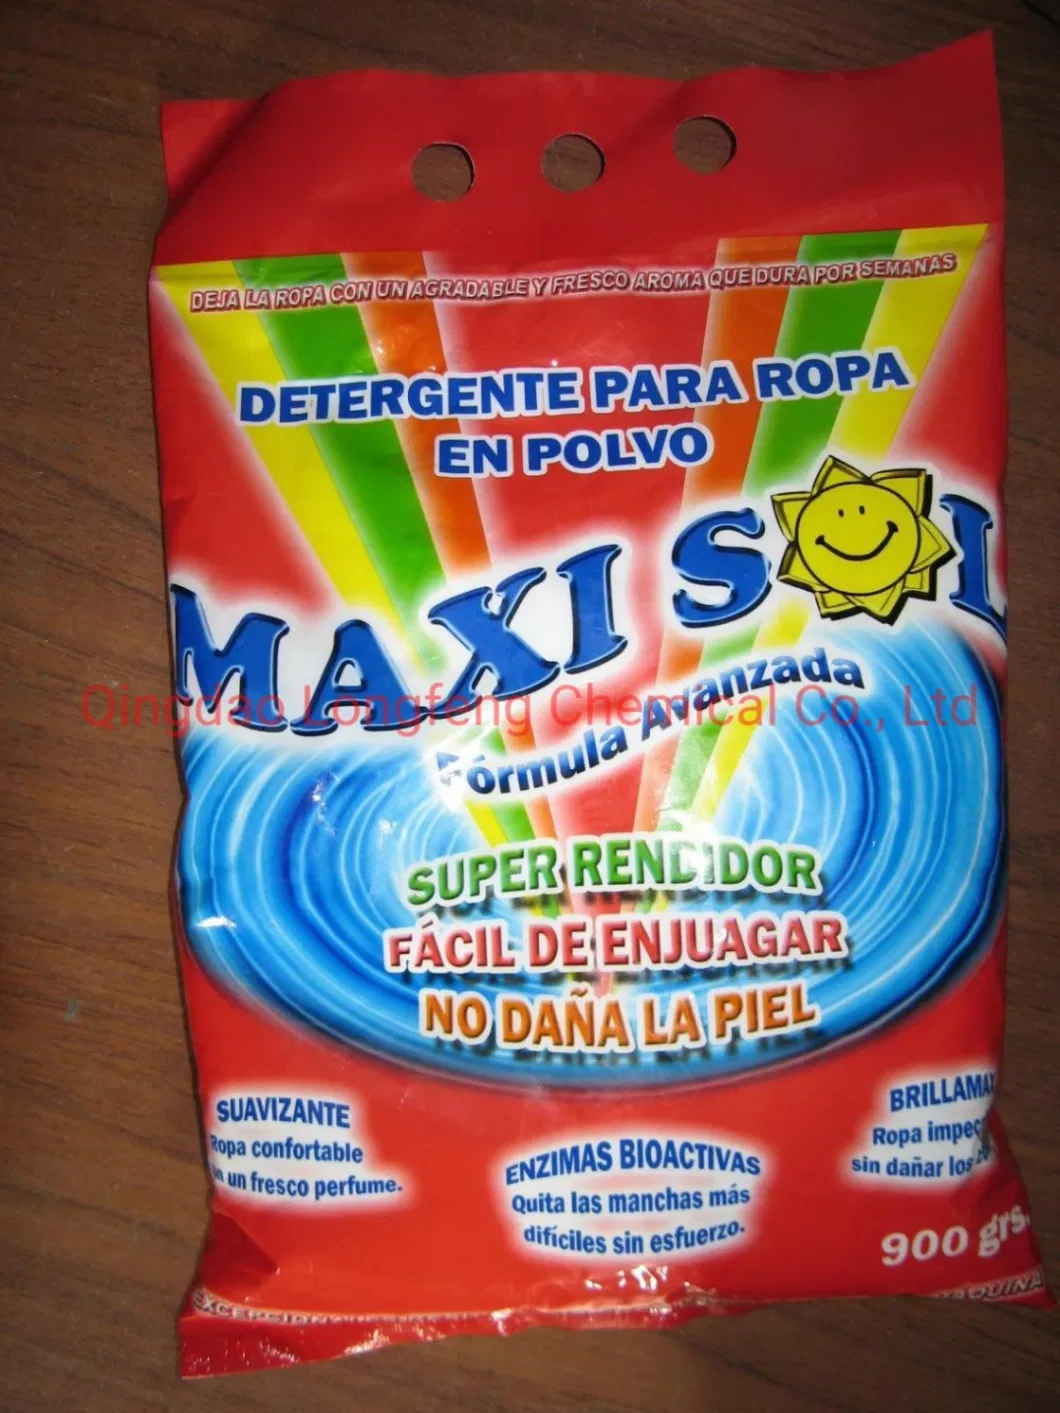 Laundry Detergent Washing Powder Detergente En Polvo Manufacturers Products